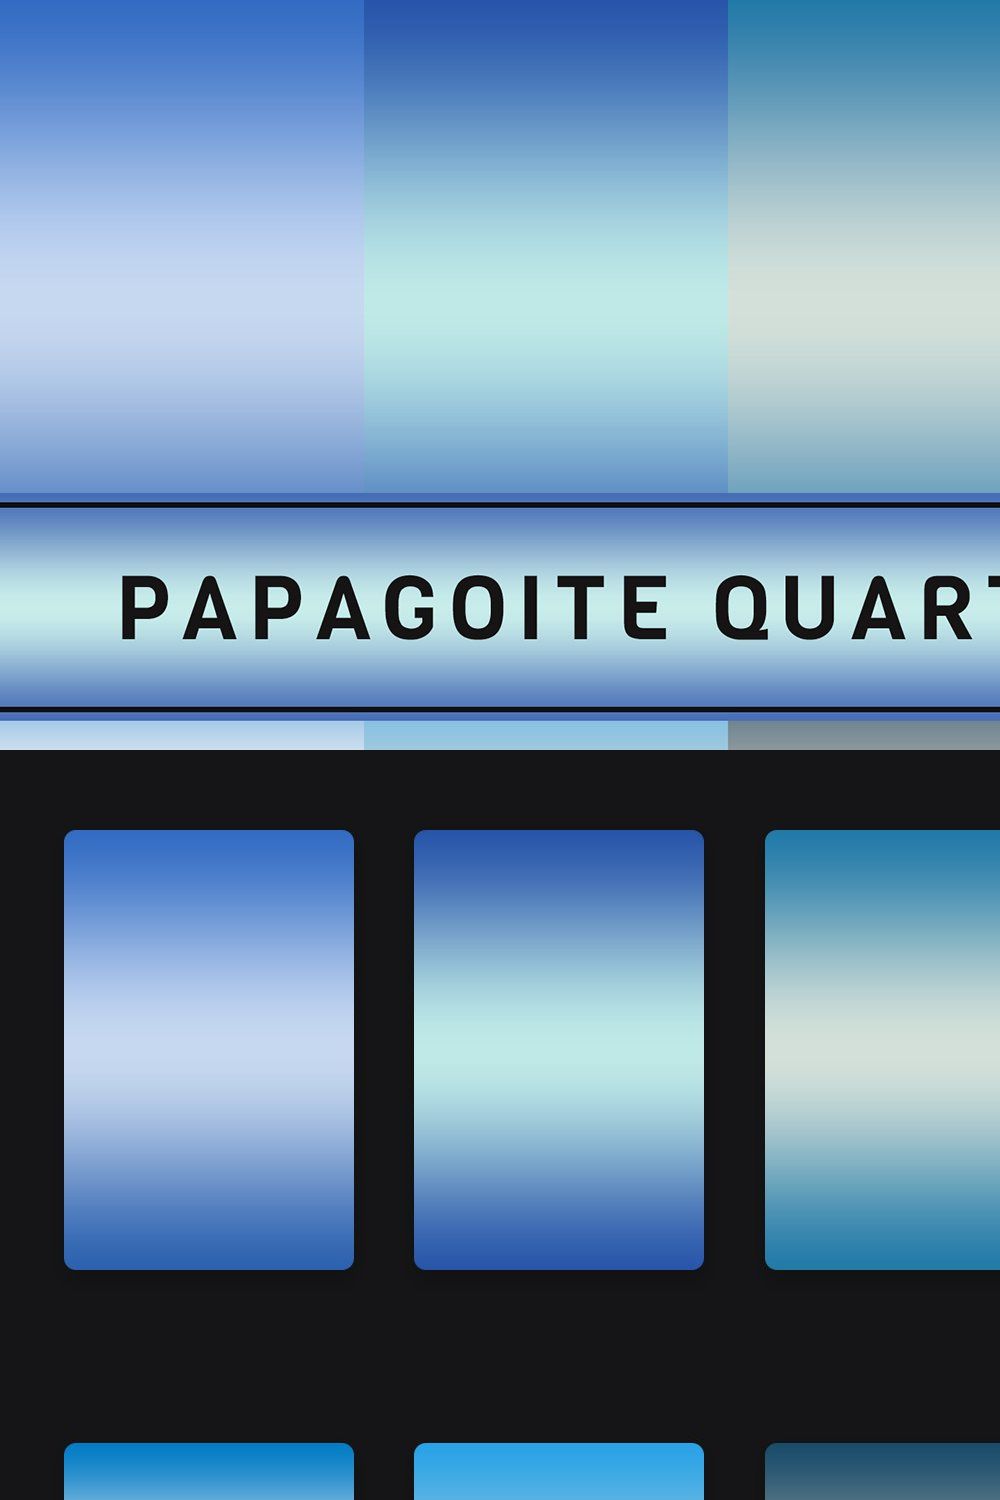 Papagoite Quartz Gradients pinterest preview image.